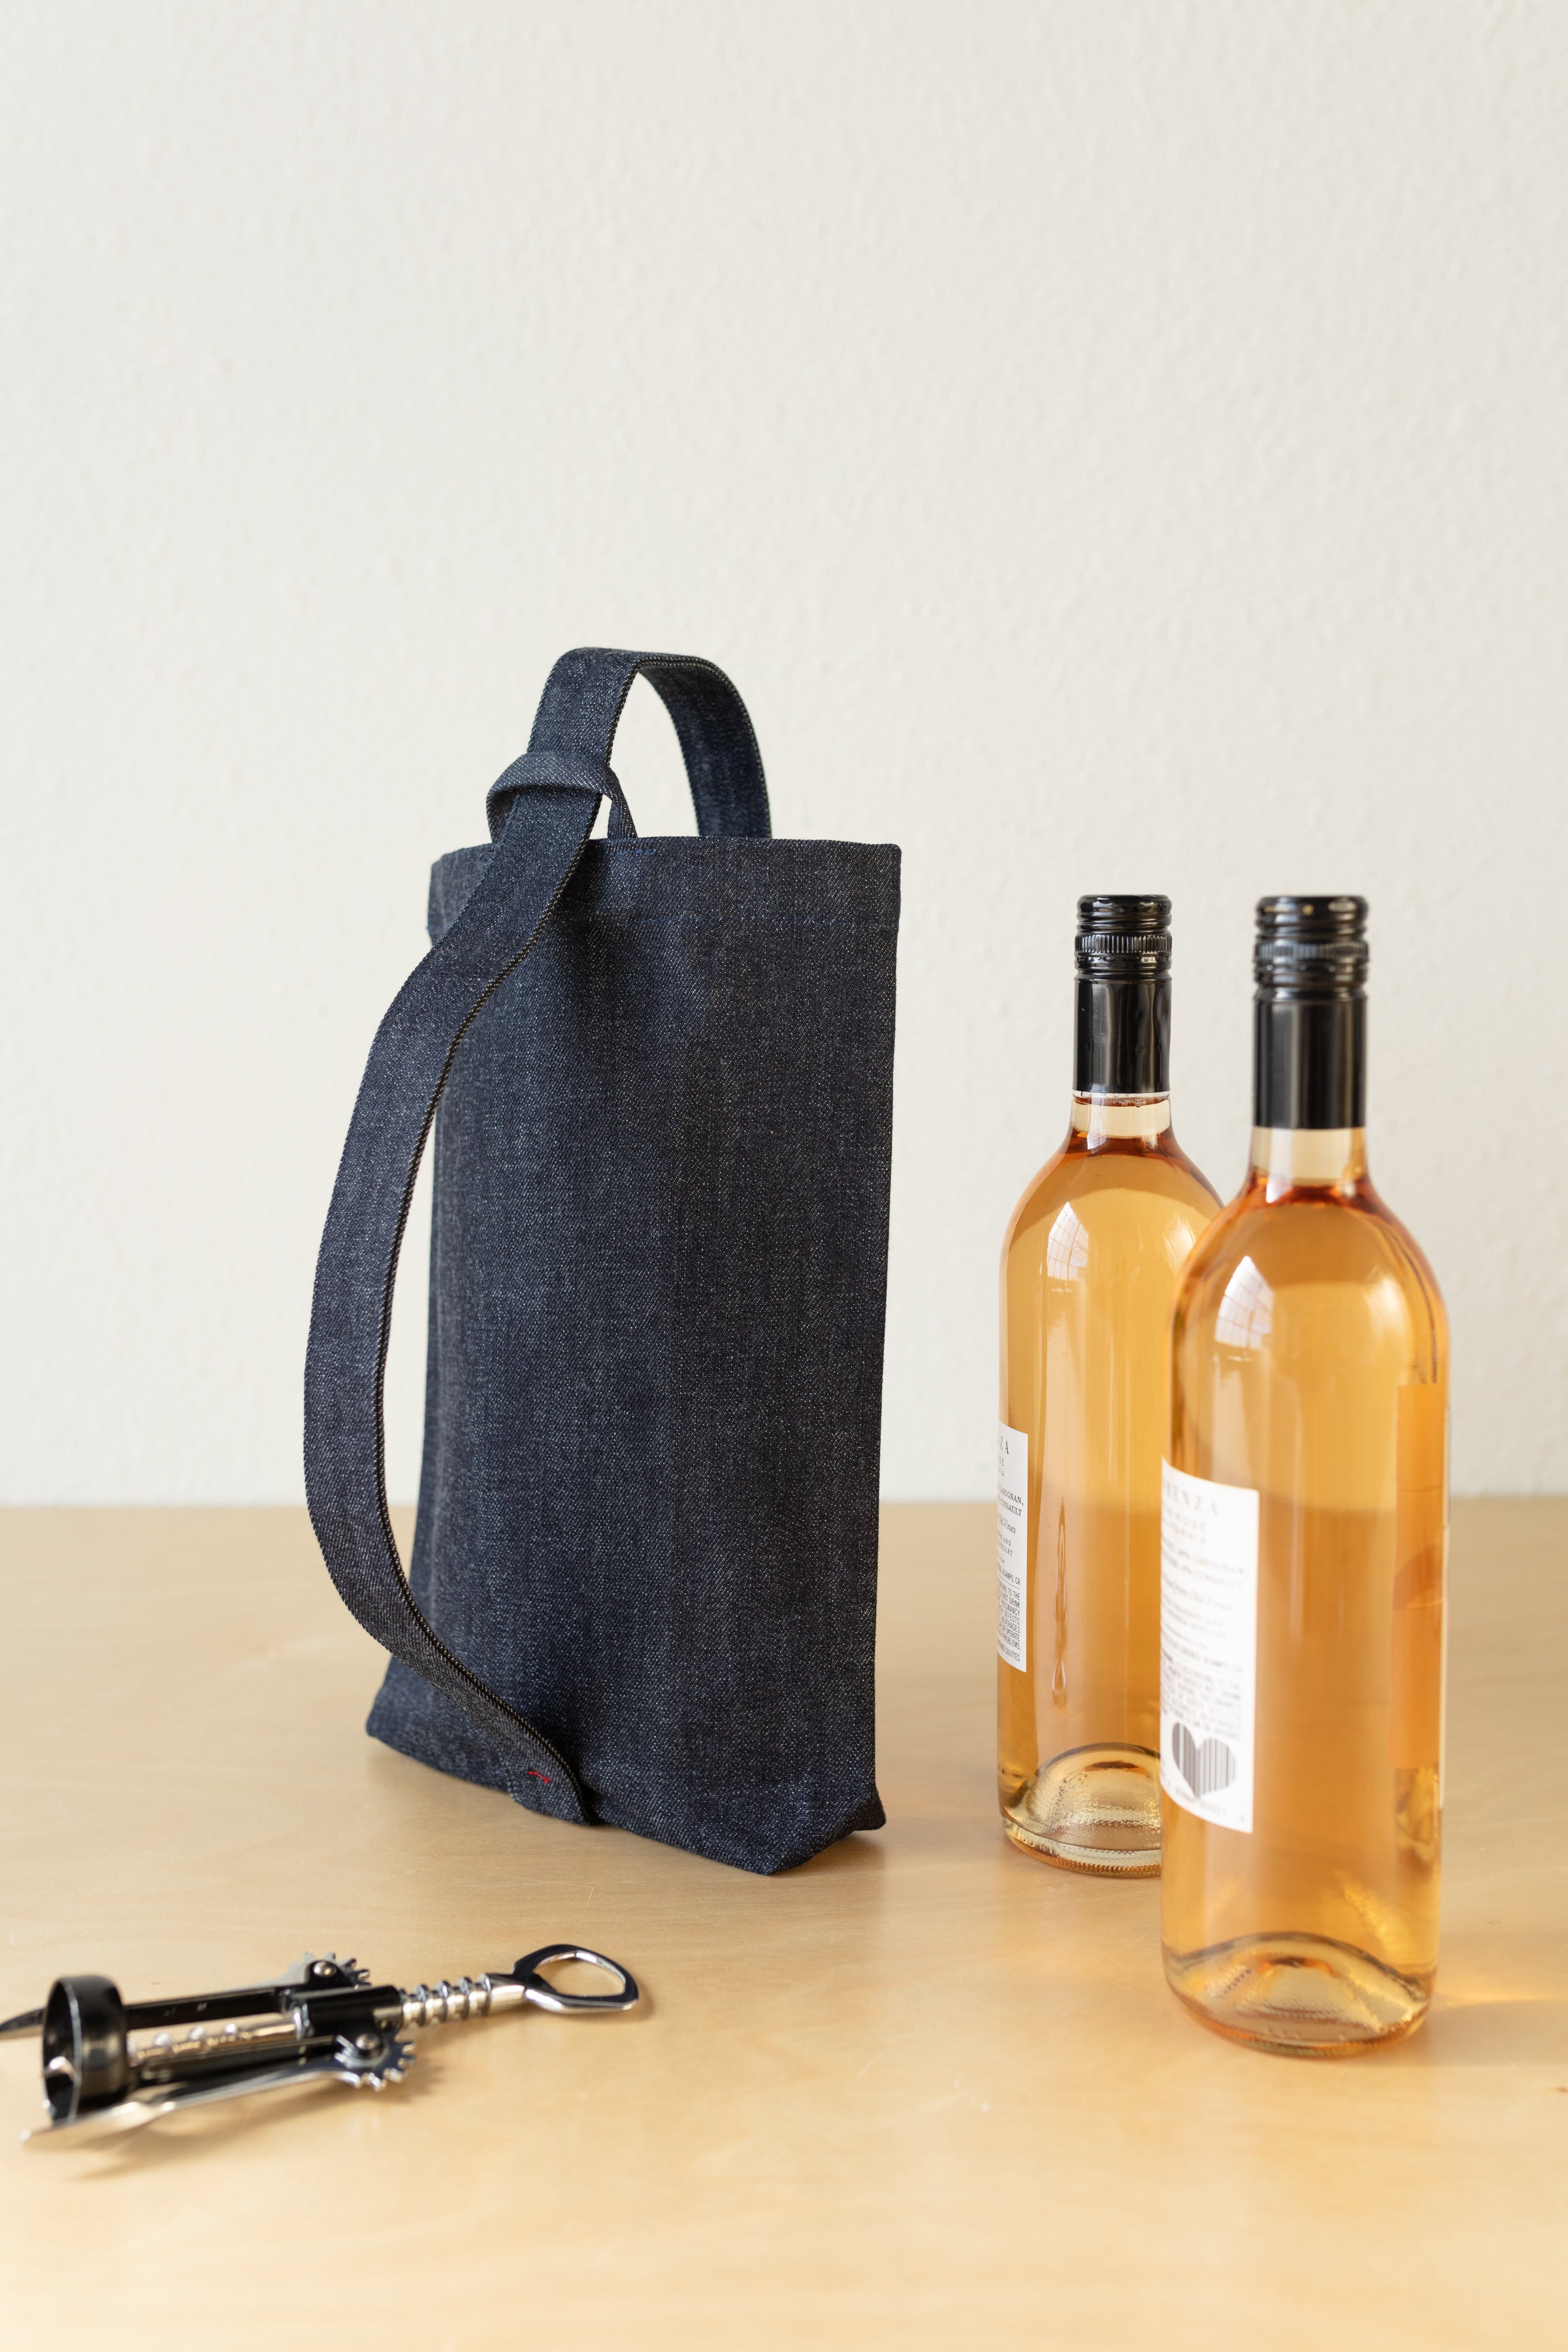 Australian Wildlife Wine Bottle Bag - Whimsical Gift Carrier